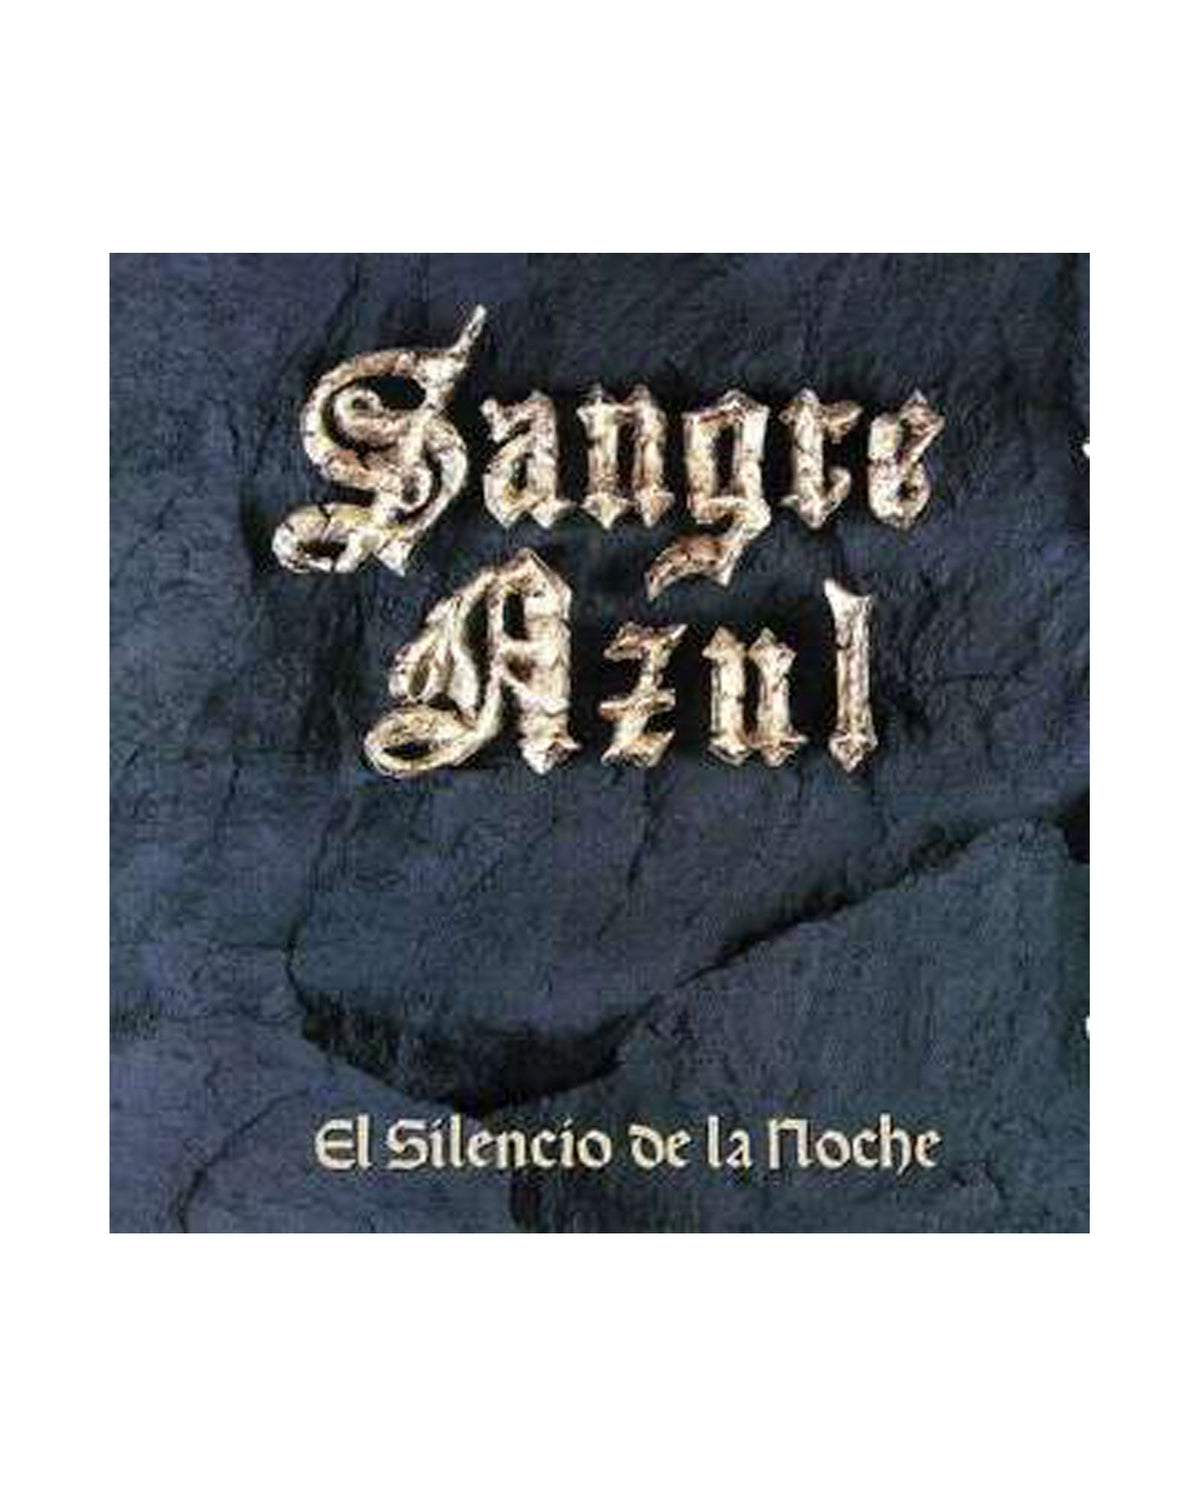 Sangre Azul - CD + LP Vinilo "El silencio de la noche" - D2fy · Rocktud - Rocktud